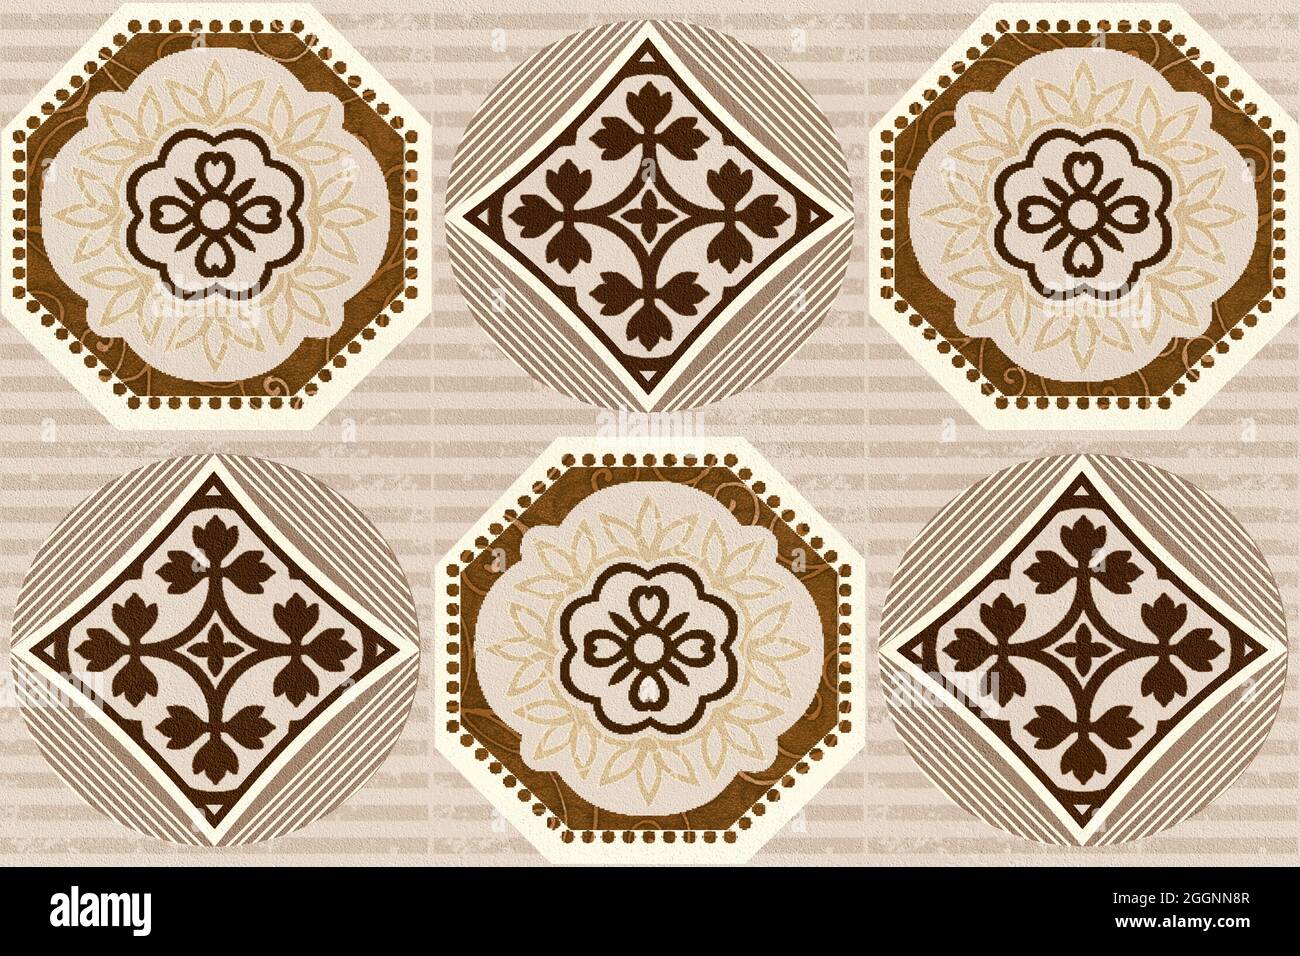 monogram flower tile